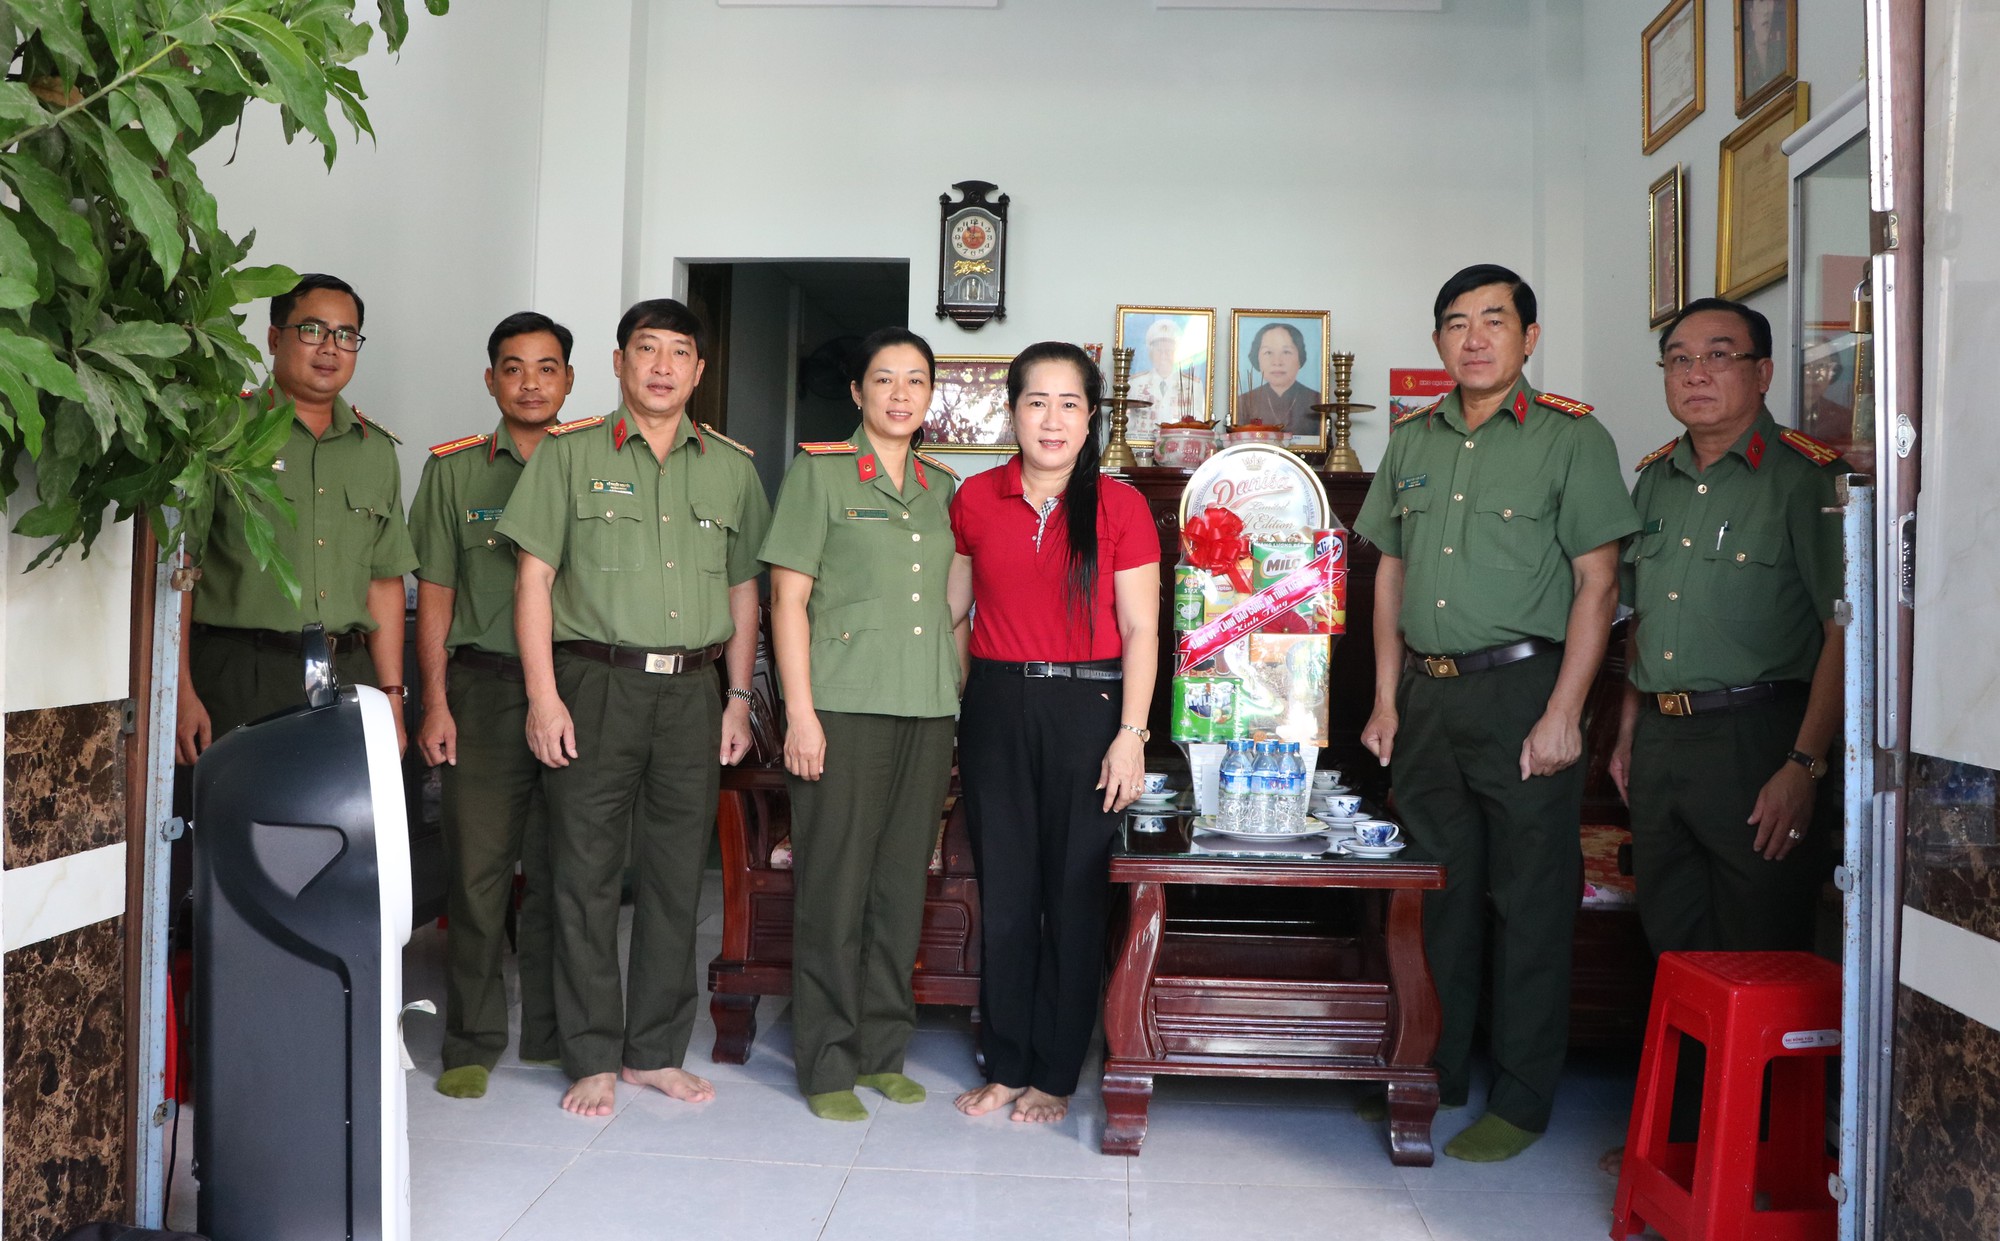 Giám đốc Công an tỉnh Kiên Giang thăm, tặng quà các gia đình chính sách nhân dịp 27/7 - Ảnh 3.